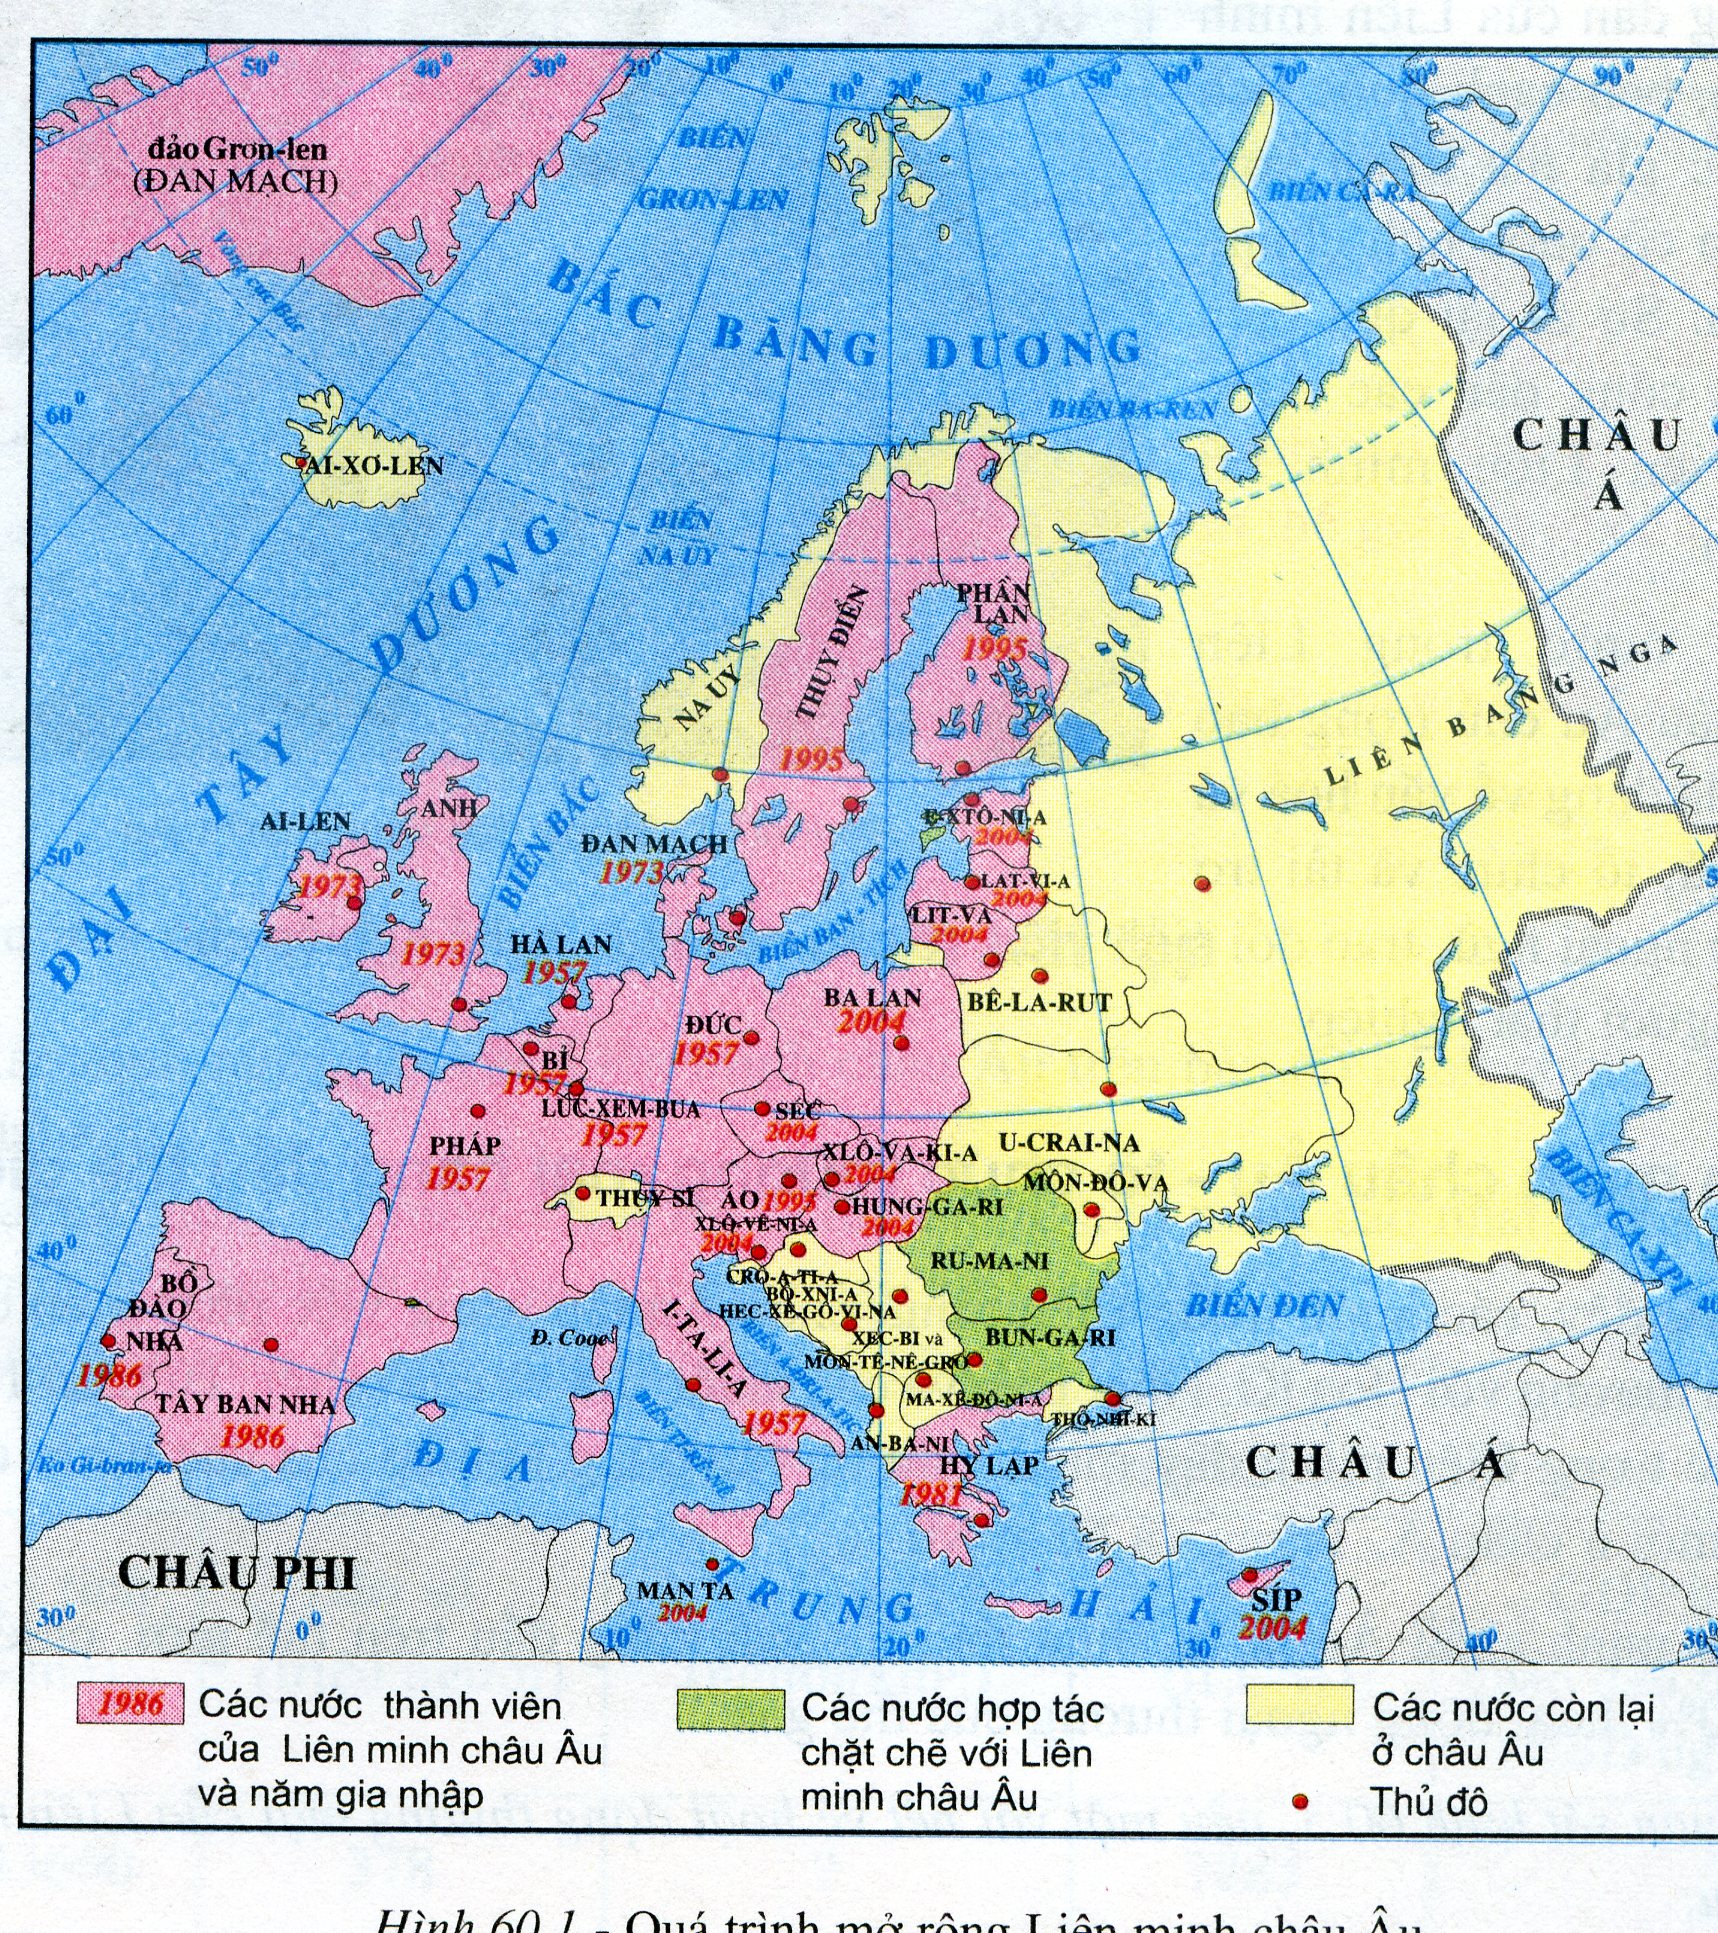 SGK Địa lý lớp 7 Châu Âu năm 2024 được thiết kế dựa trên bản đồ địa hình Châu Âu mới nhất và kết hợp với hình ảnh. Giúp học sinh trong việc tìm hiểu và nghiên cứu thông tin khác nhau về các khu vực và địa danh trên lục địa này.